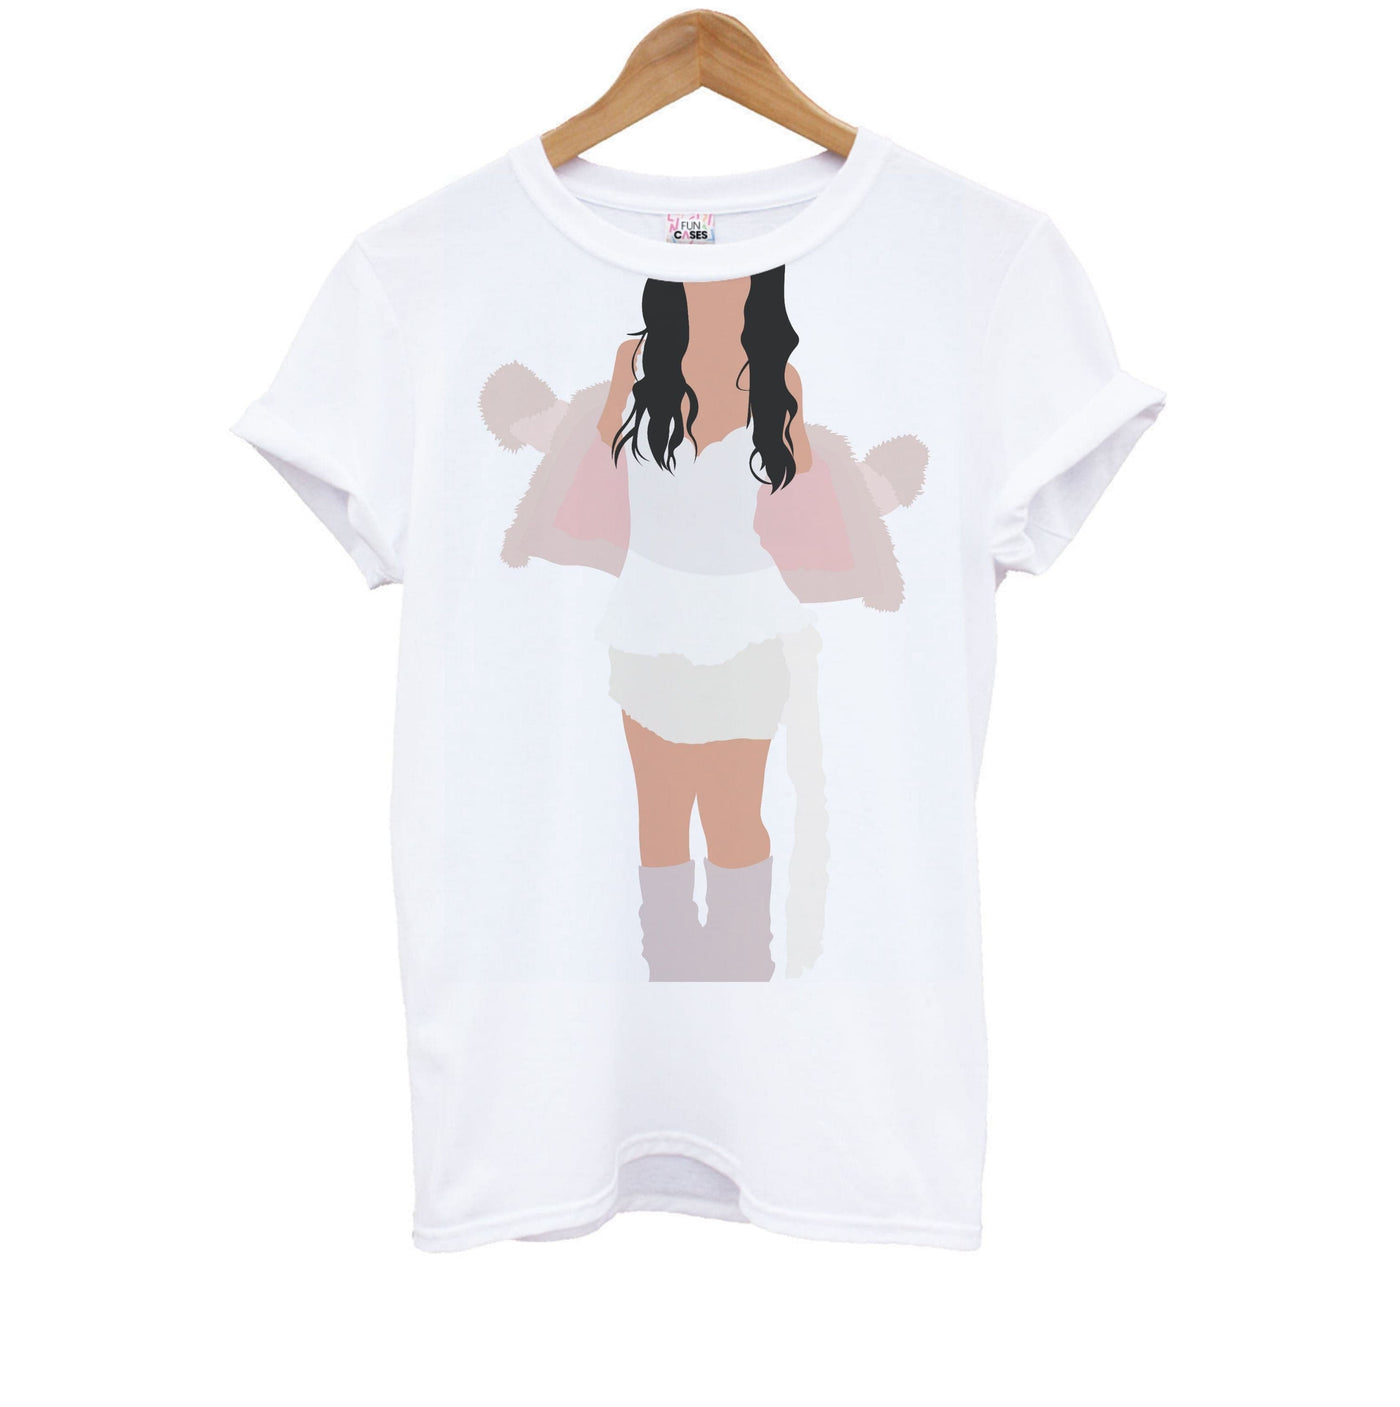 White Dress - Nessa Barrett Kids T-Shirt